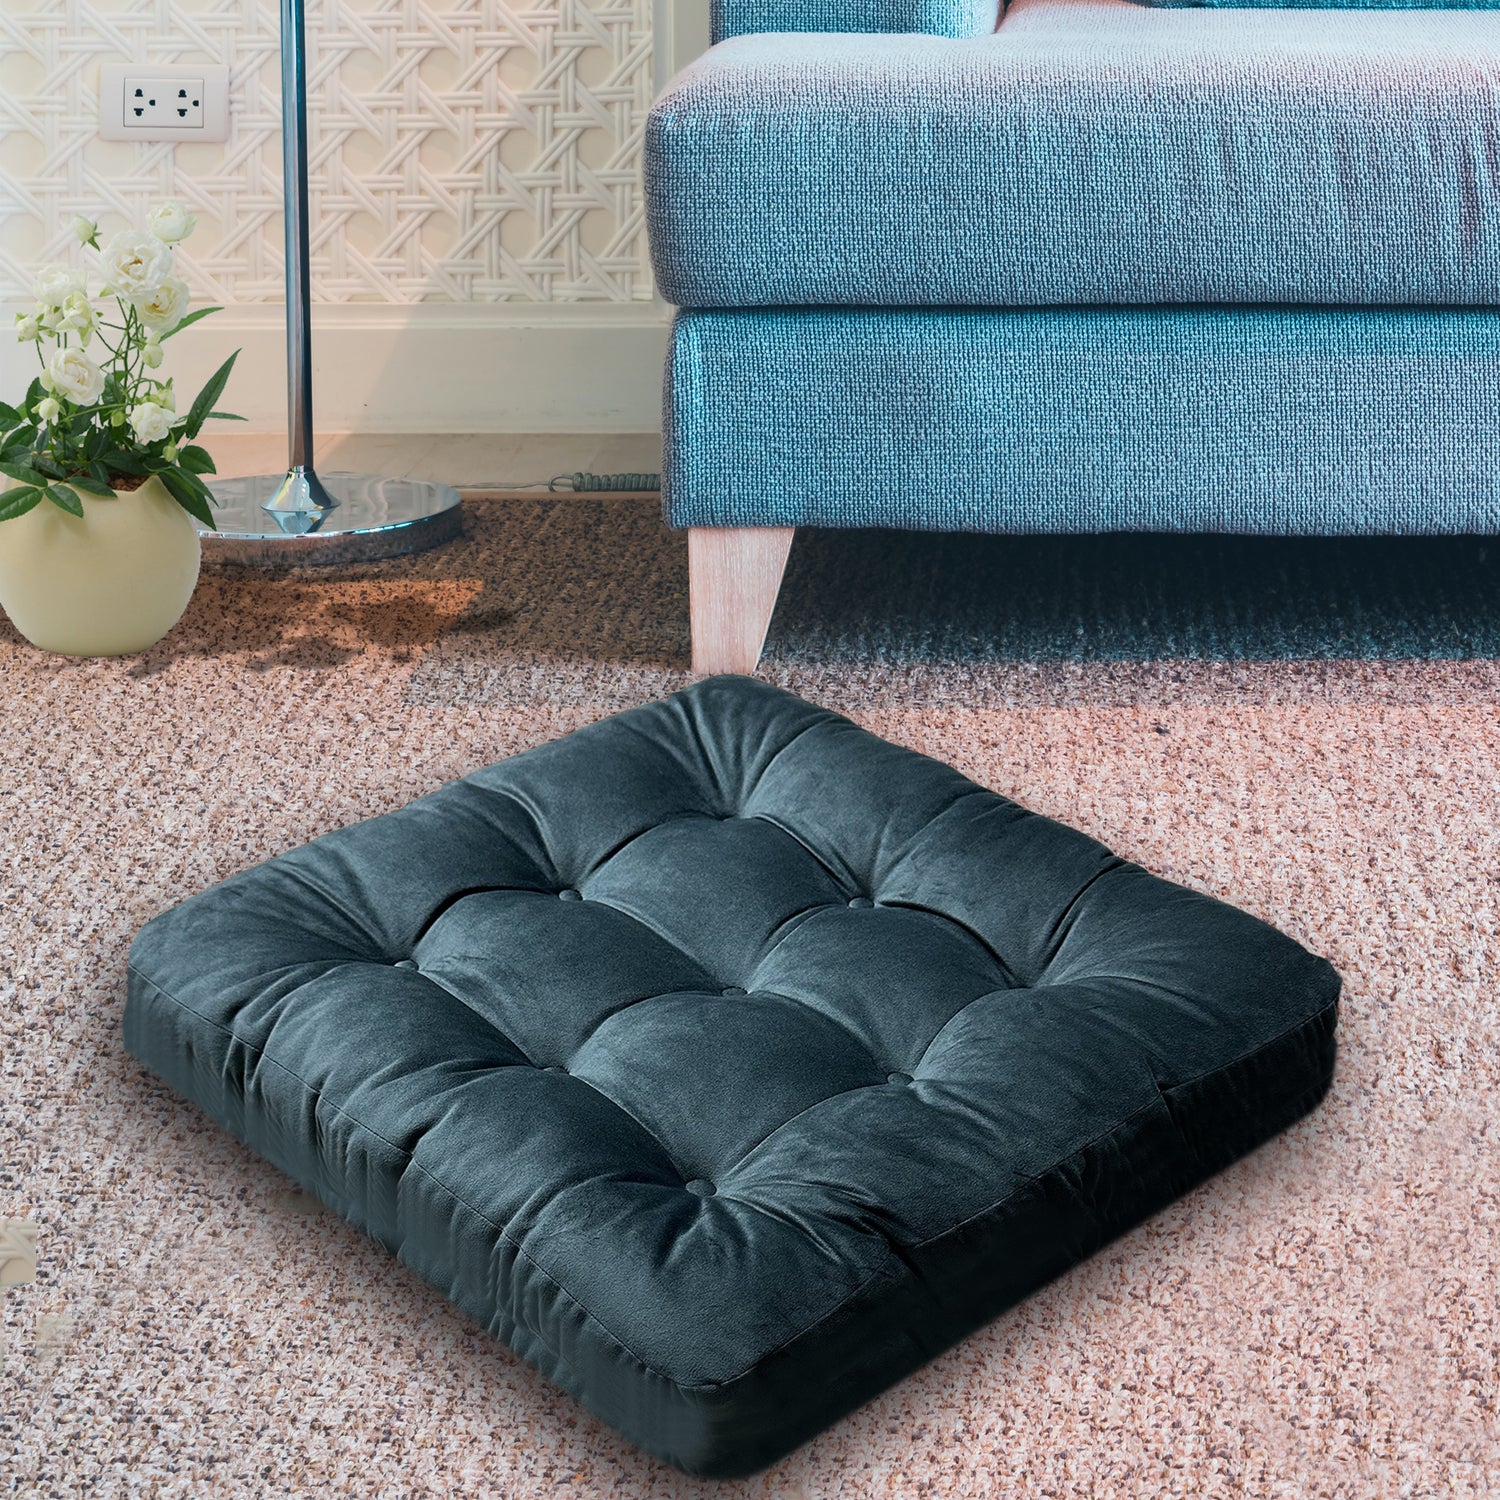 LuziQove-dark green floor cushion